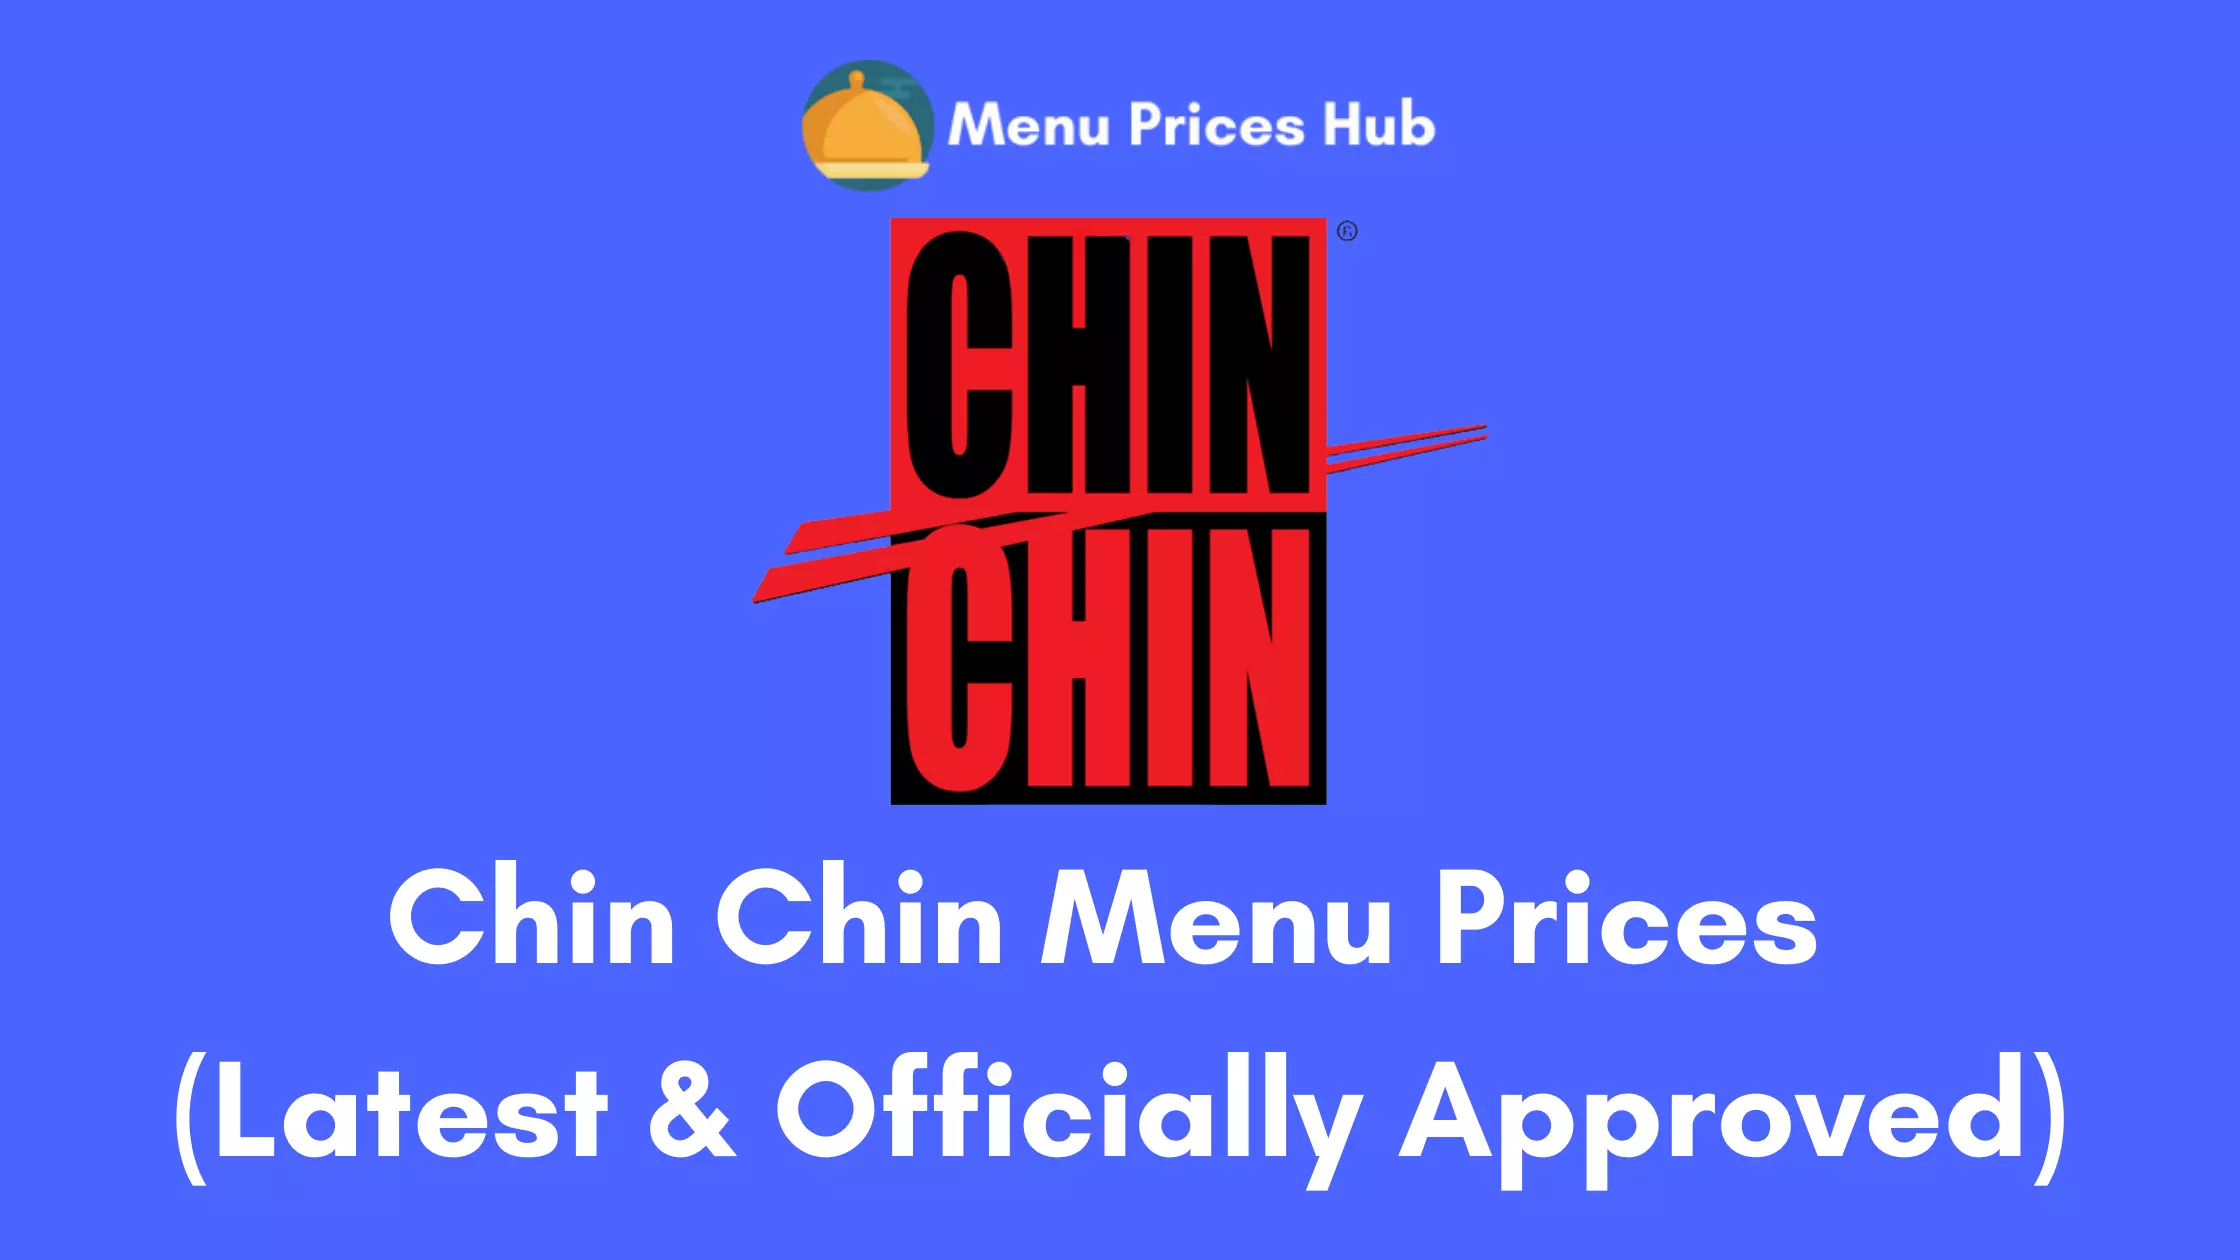 Chin Chin Menu Prices